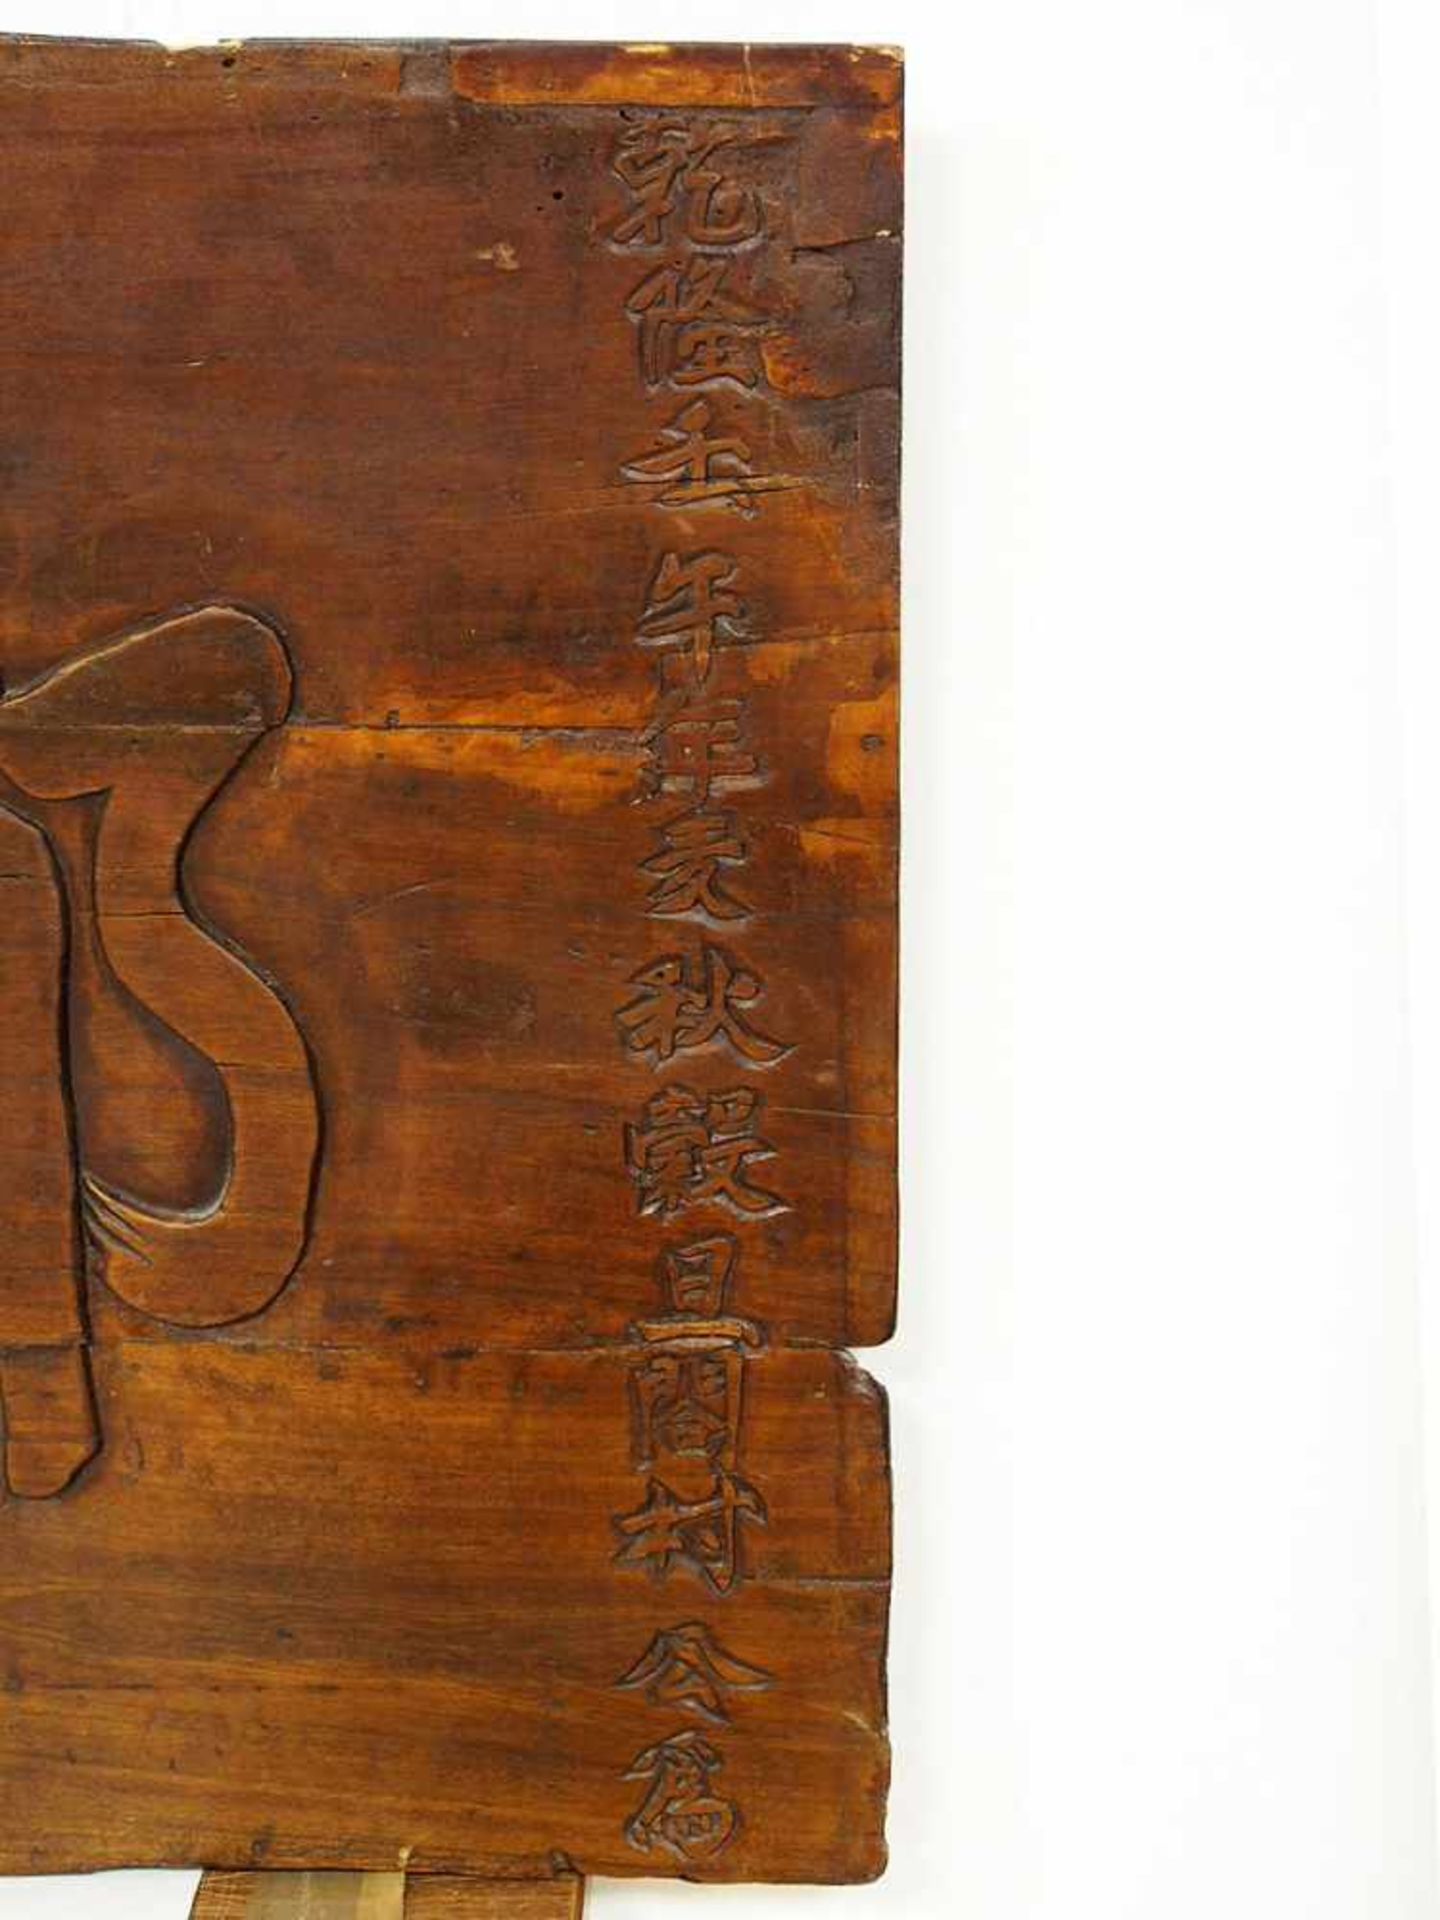 Ladenschild (?)Inschriftenbrett, China, 17./18. Jh., Holz, geschnitzt, 65,5 x 185 cm- - -25.00 % - Bild 2 aus 3